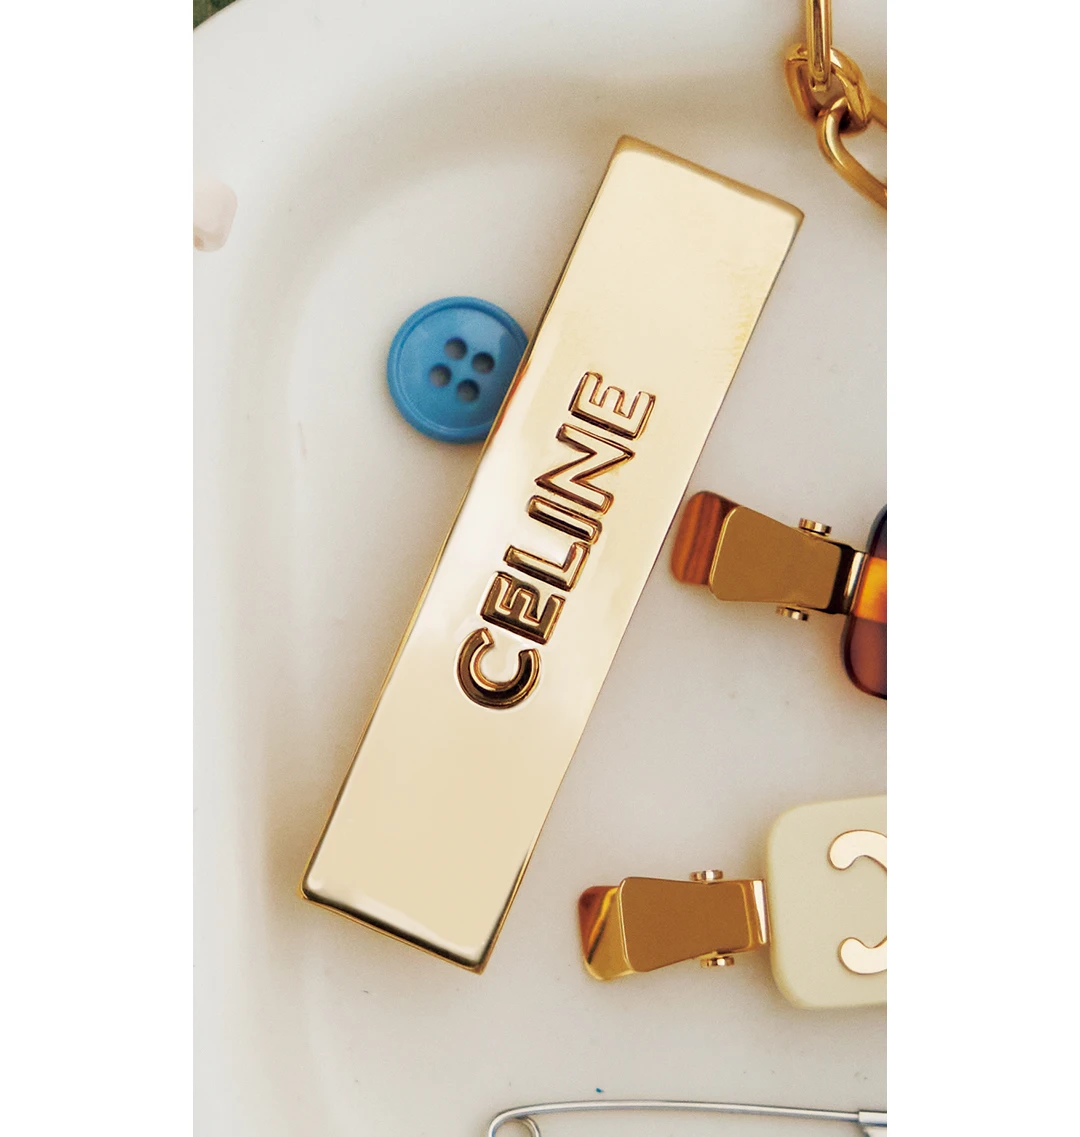 CELINE（セリーヌ）】ブランドの象徴的なモチーフを用いたネックレスや